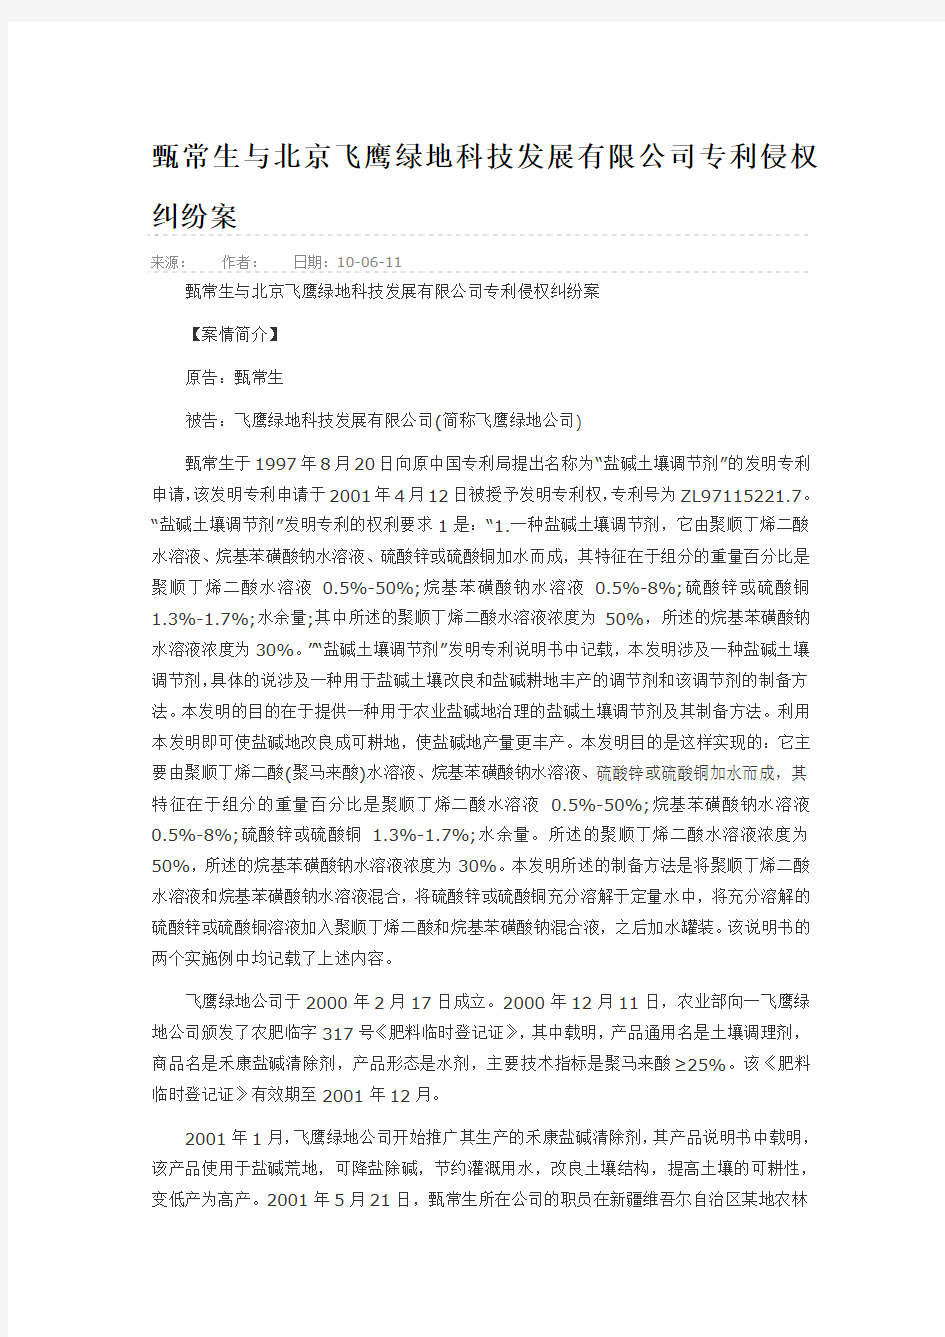 甄常生与北京飞鹰绿地科技发展有限公司专利侵权纠纷案